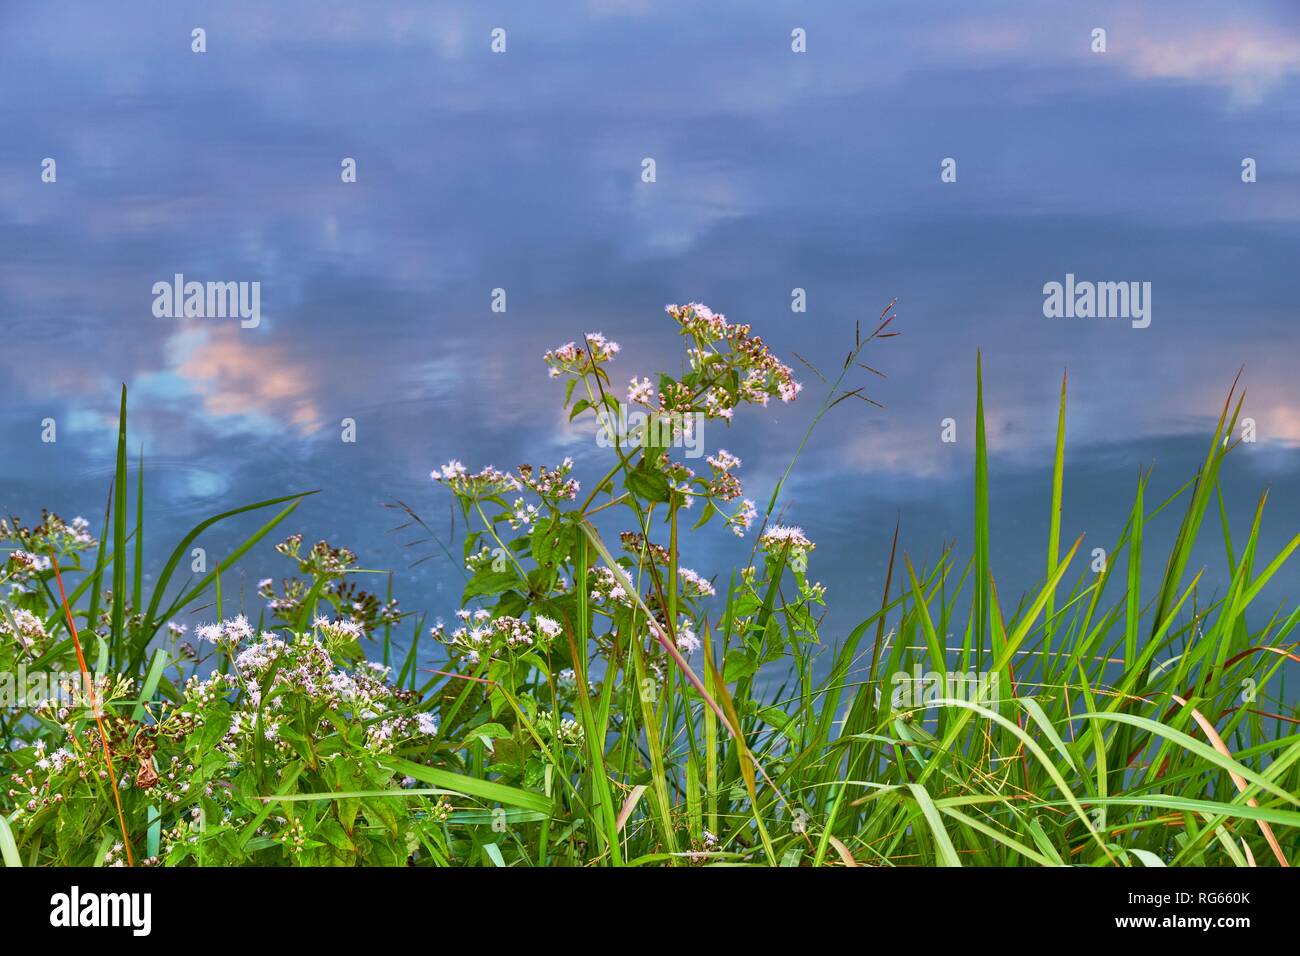 Fontana di erba e riflessione di cielo nuvoloso in acqua Foto Stock